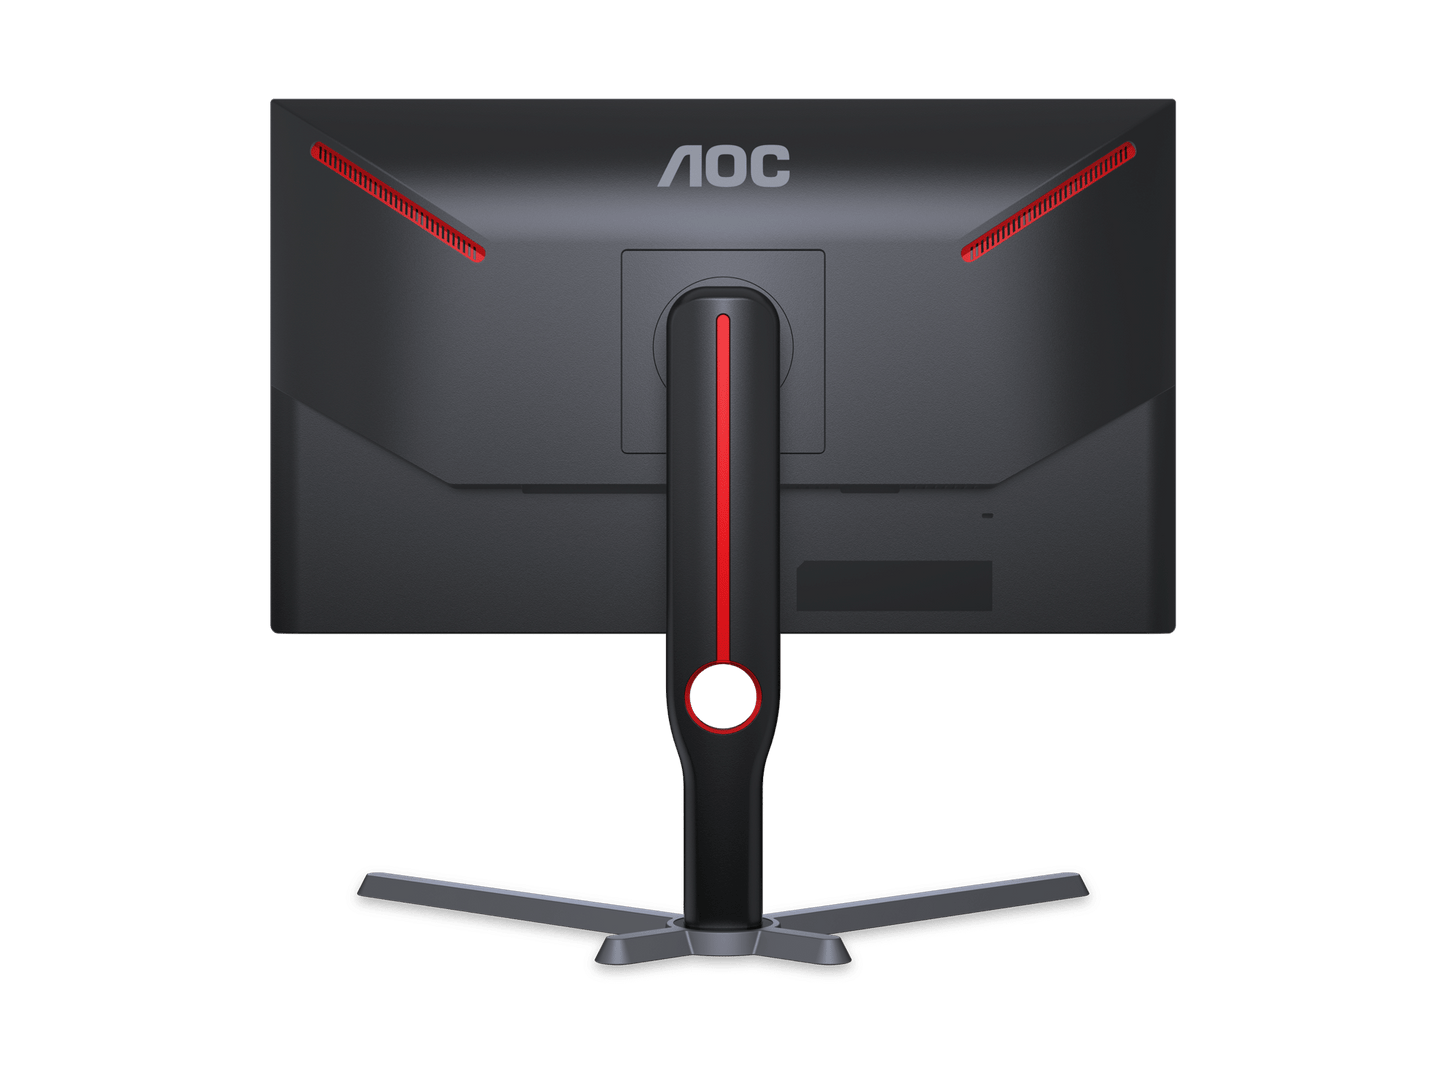 Màn hình AOC 25G3Z 24.5" Full HD Gaming Fast IPS 180HZ